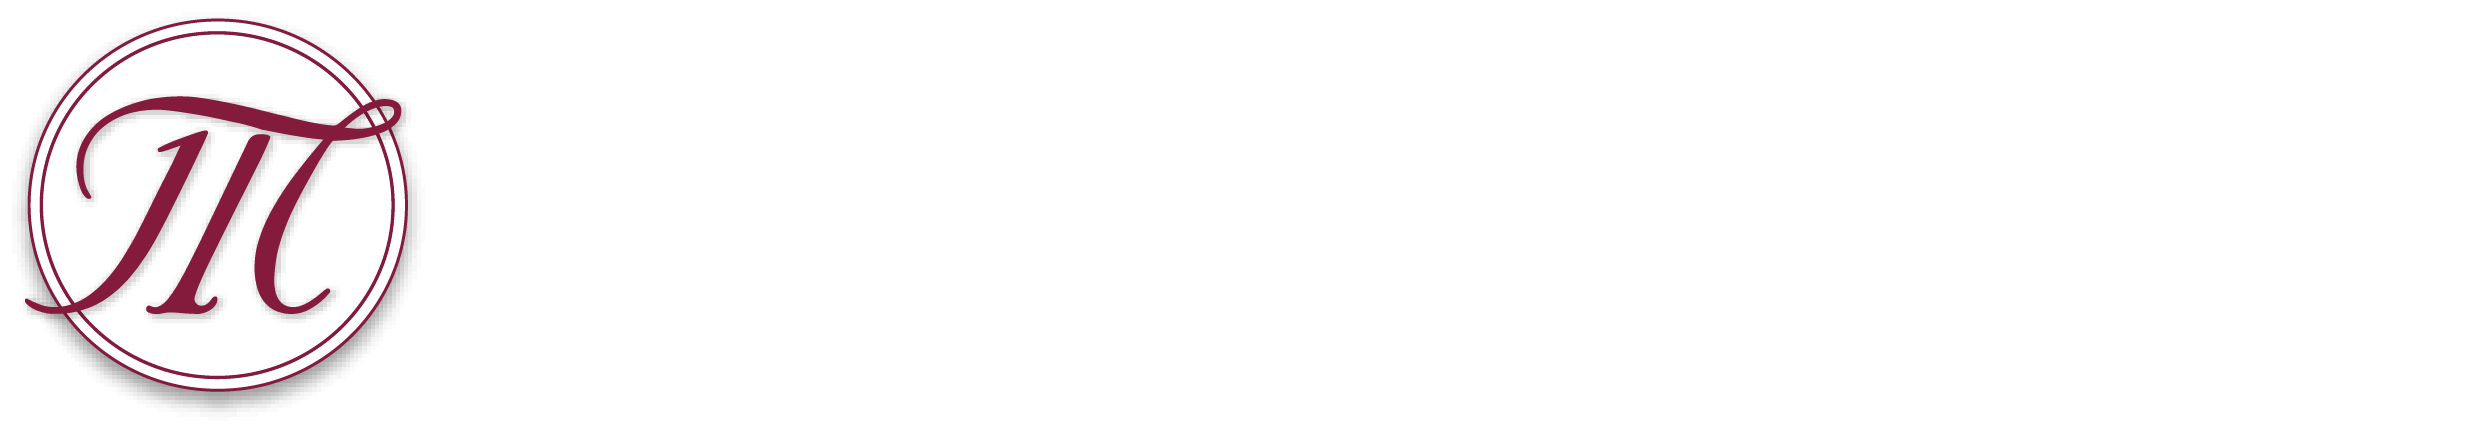 mayer law group, A.P.C.